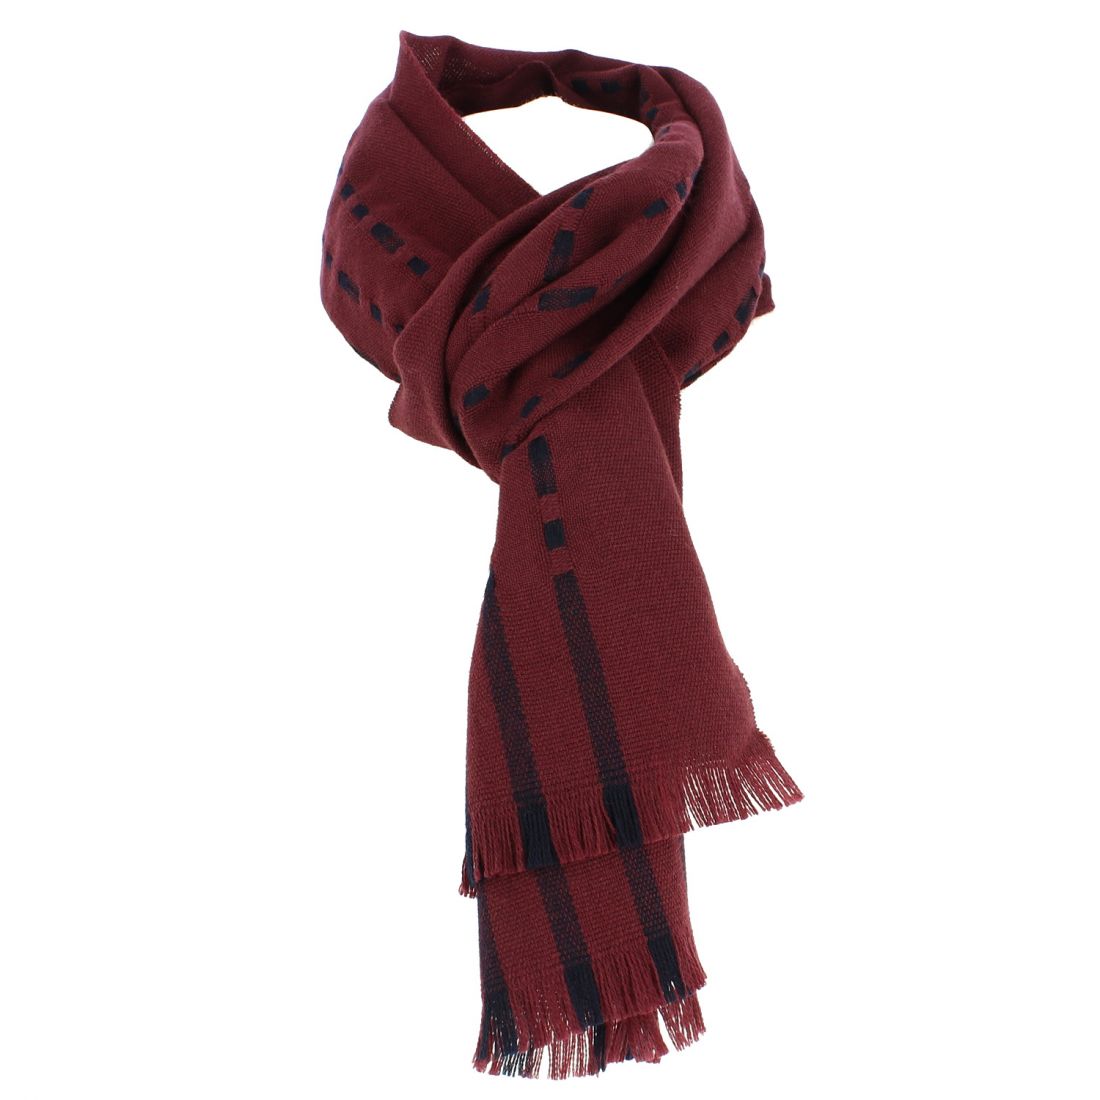 Découvrez notre écharpe rouge en cachemire et soie ultra douce et chaude  pour homme.